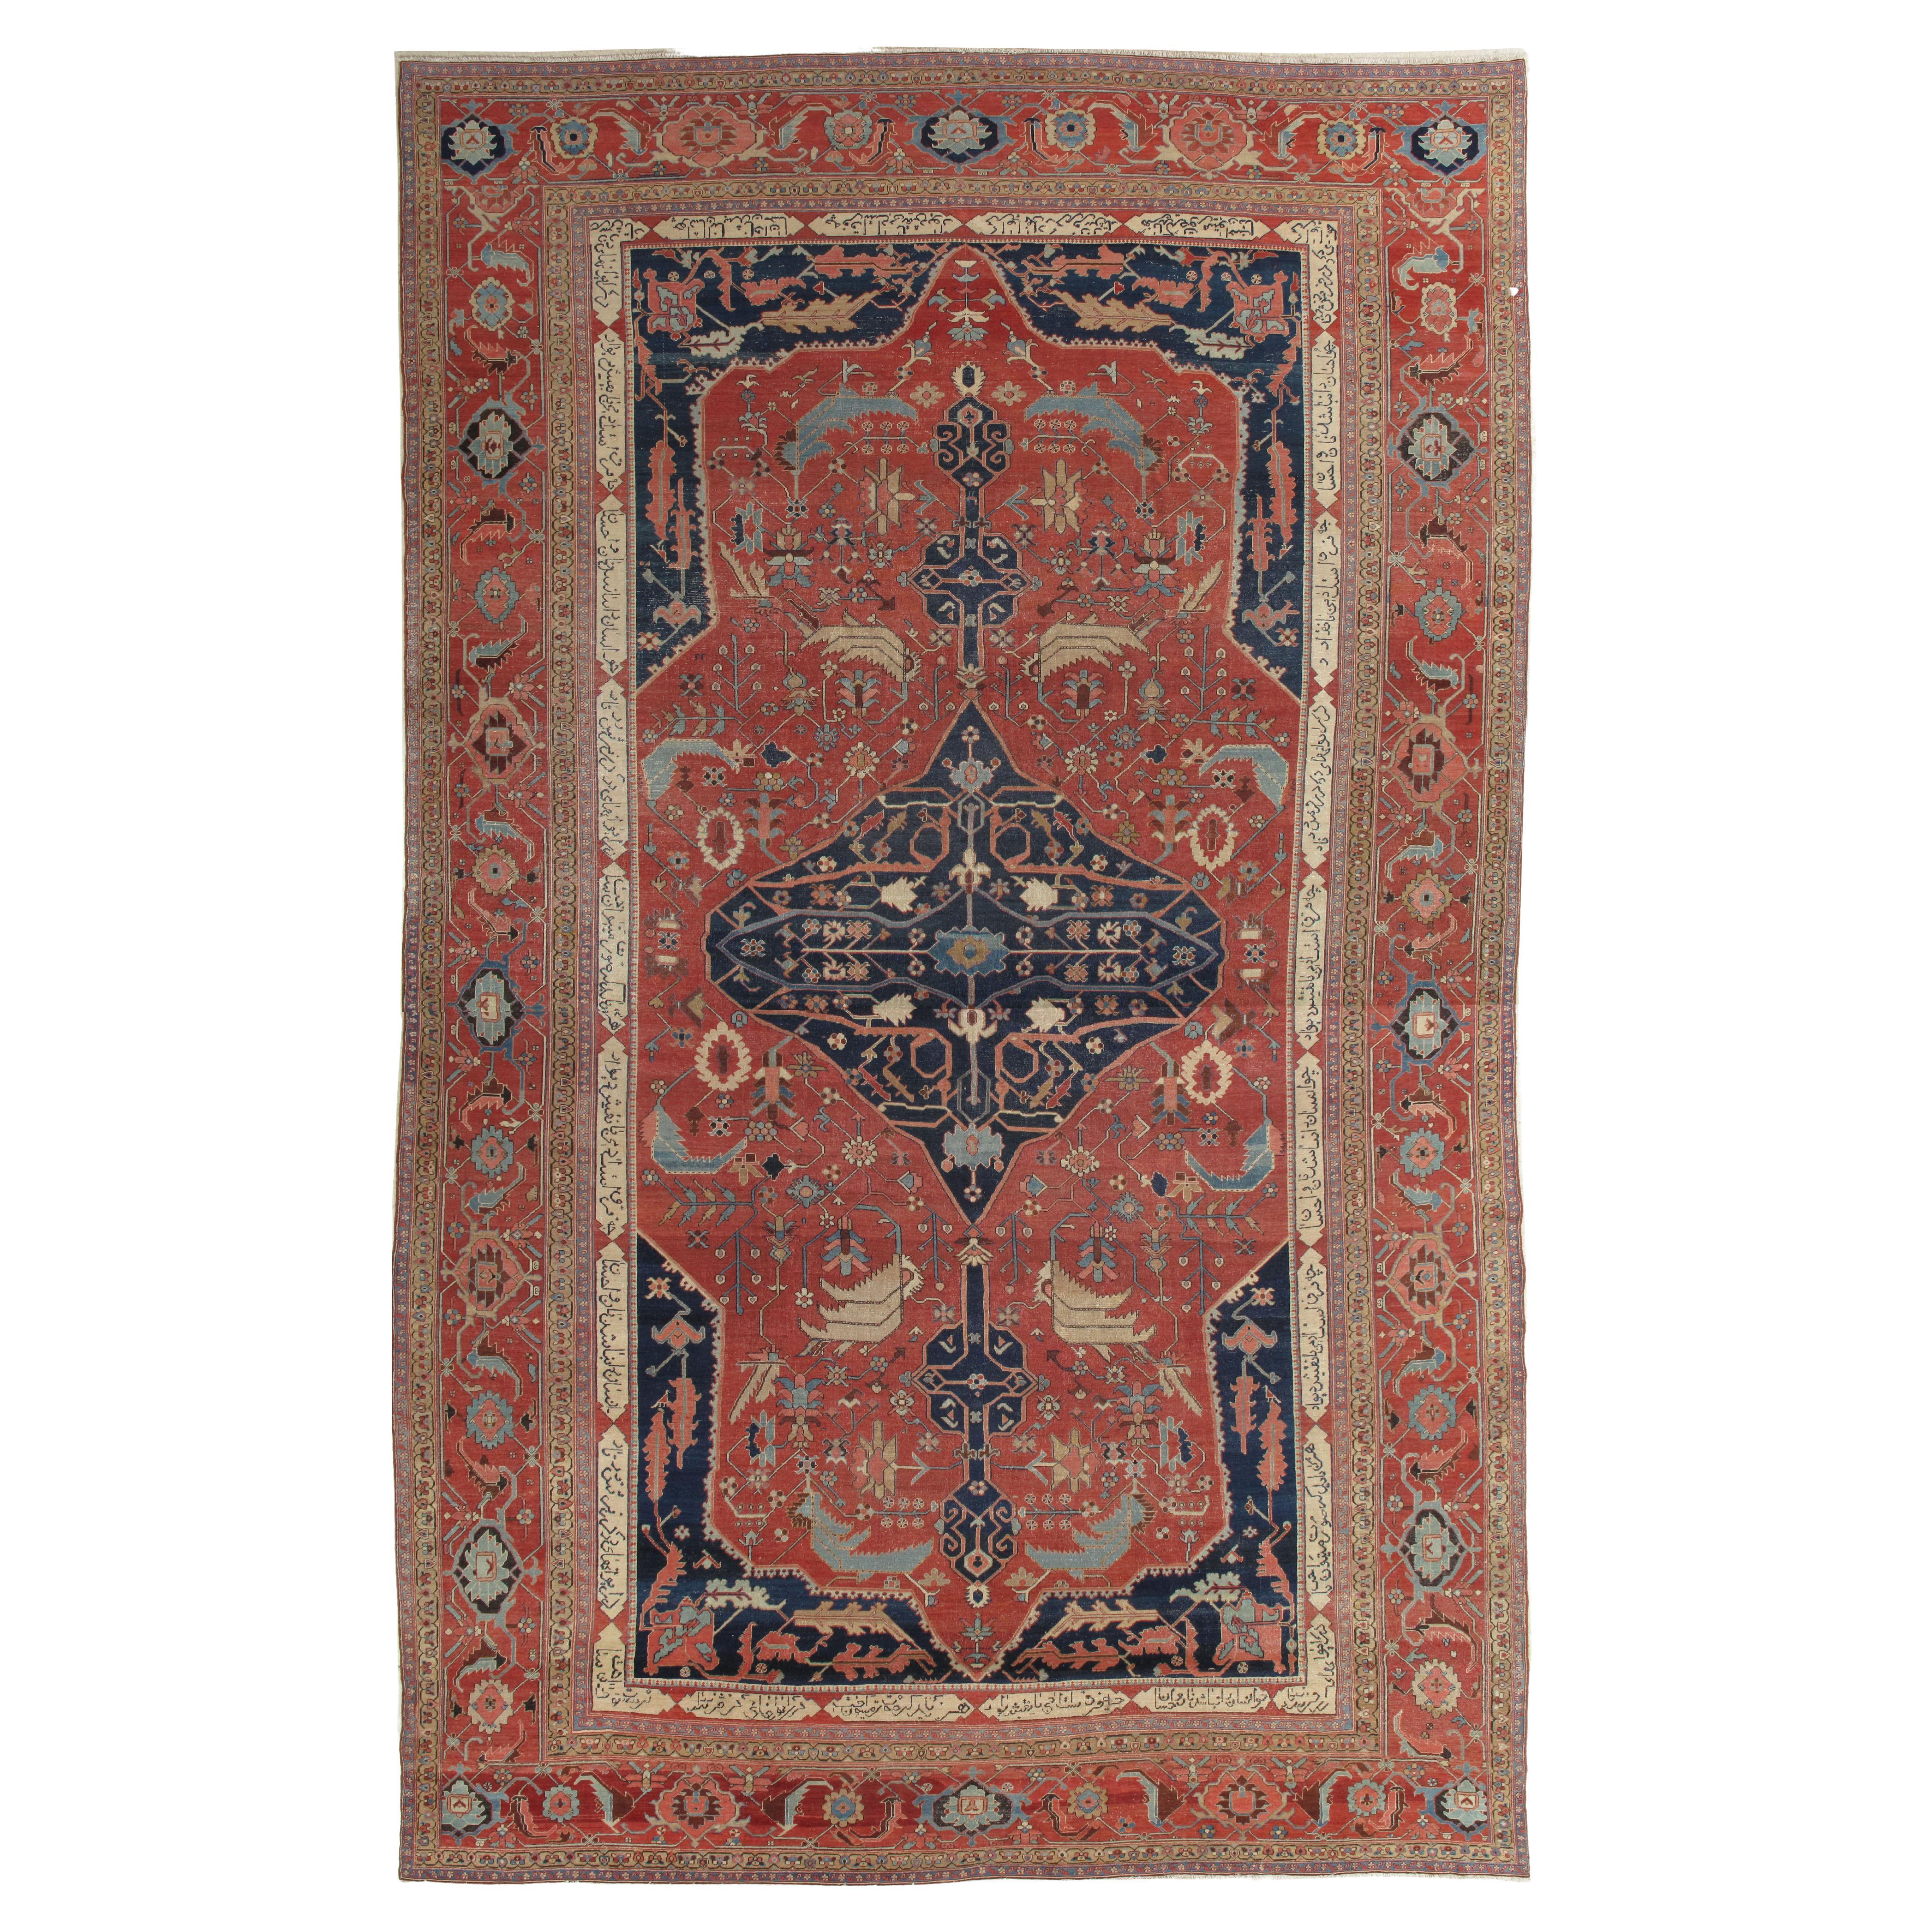 Antiker persischer Serapi-Teppich, handgefertigter Orientteppich aus Wolle, Rost, Elfenbein und Blau